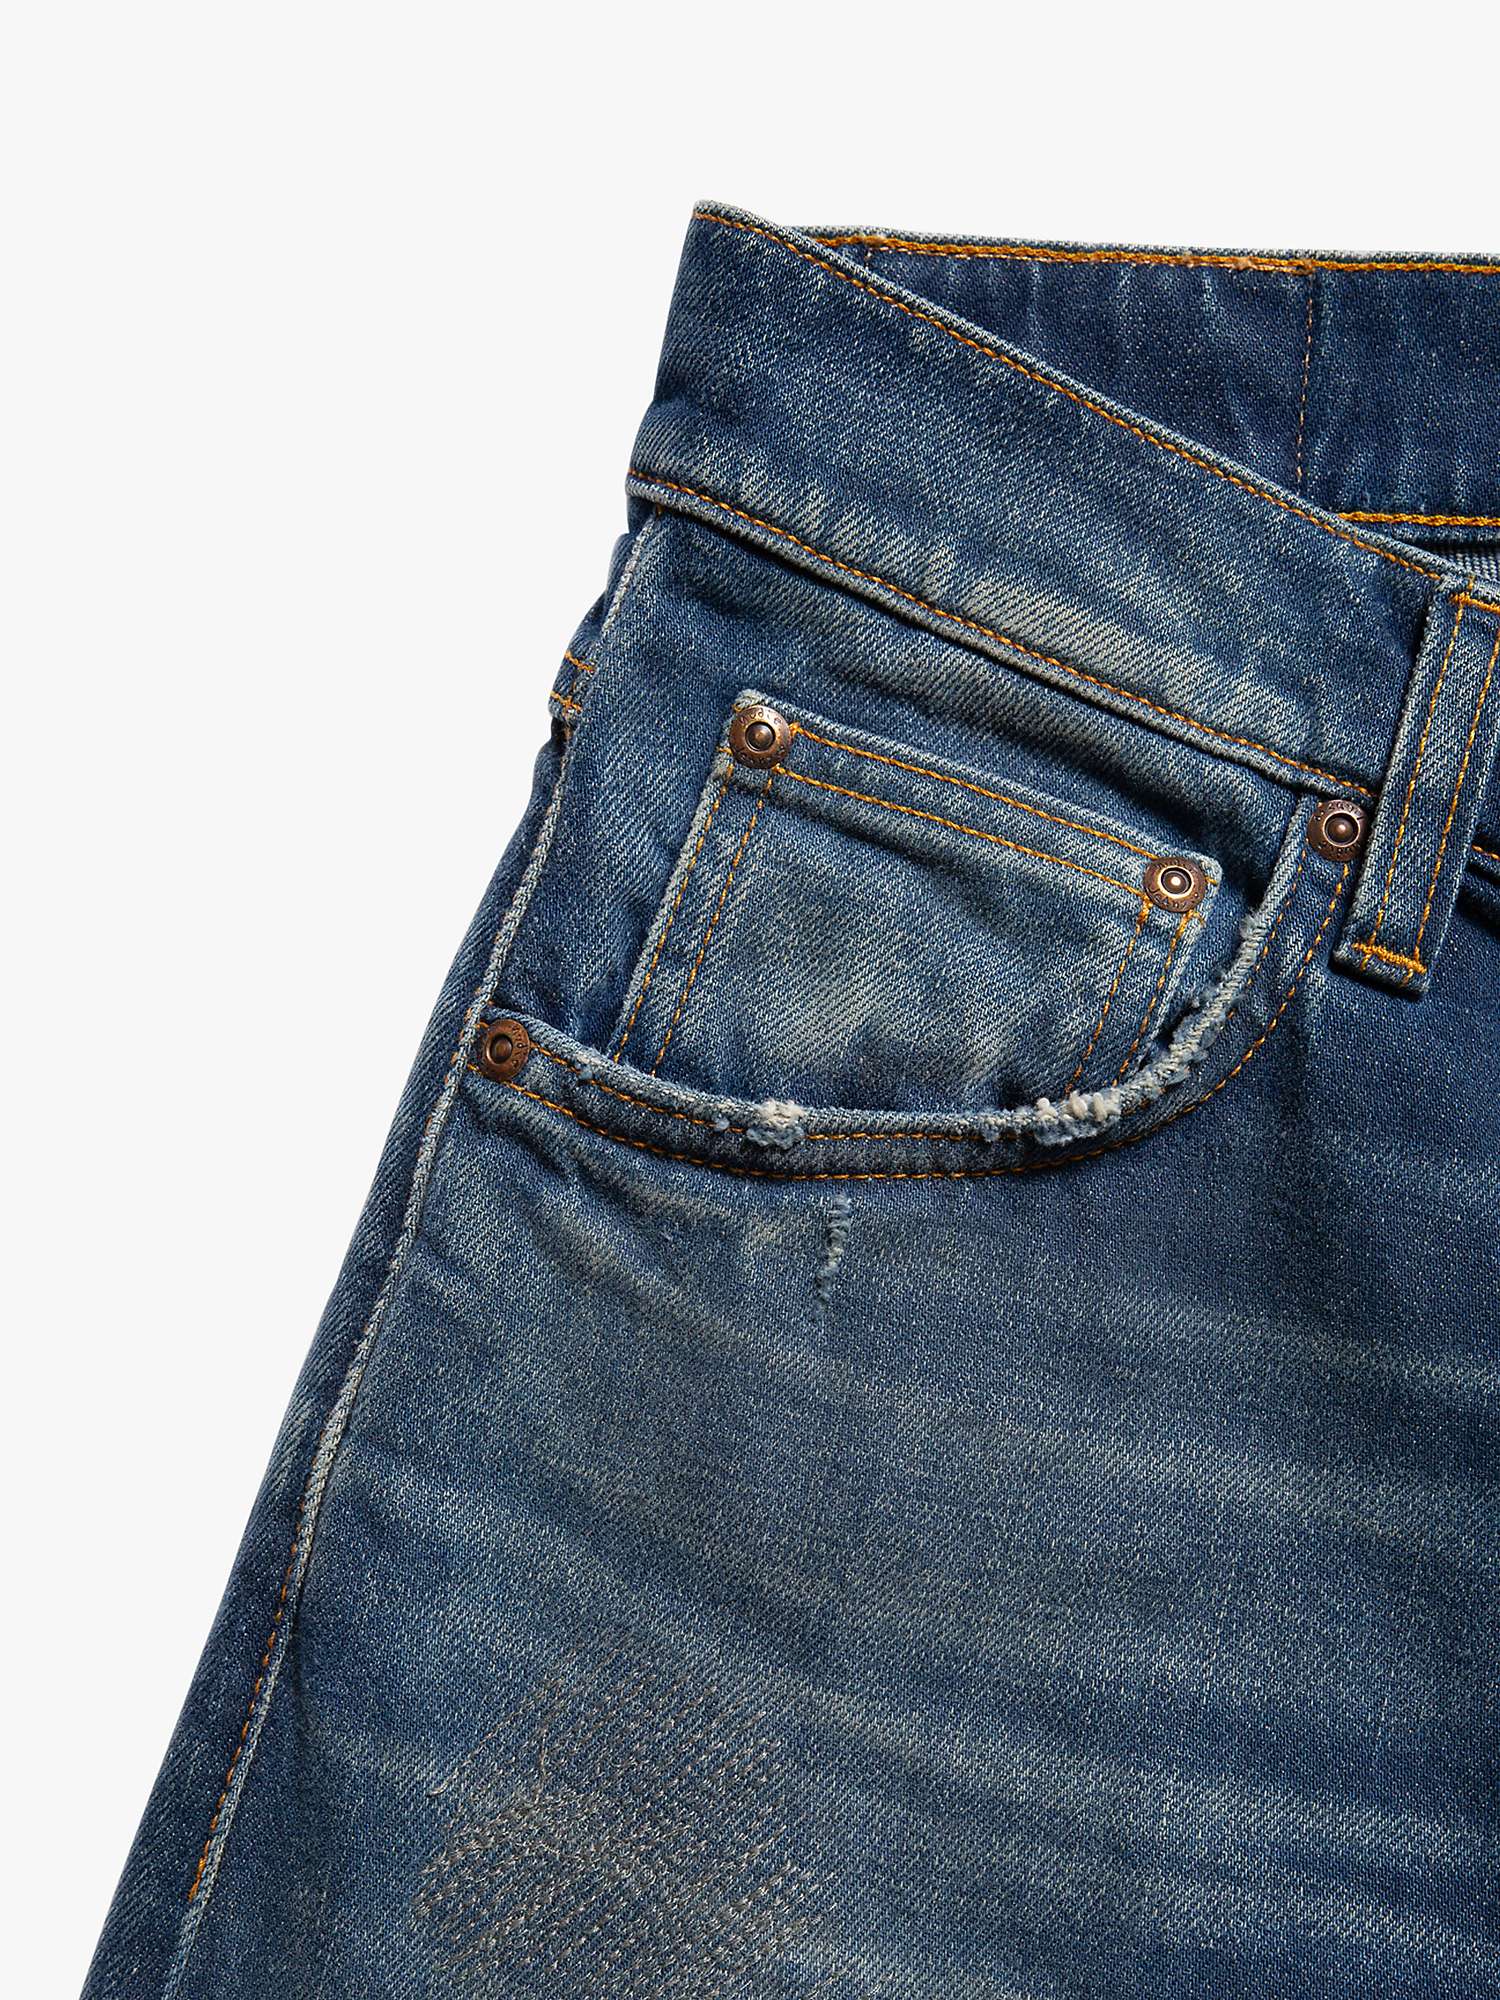 Buy Nudie Jeans Lean Dean Worn Slim Fit Jeans, Blue Online at johnlewis.com